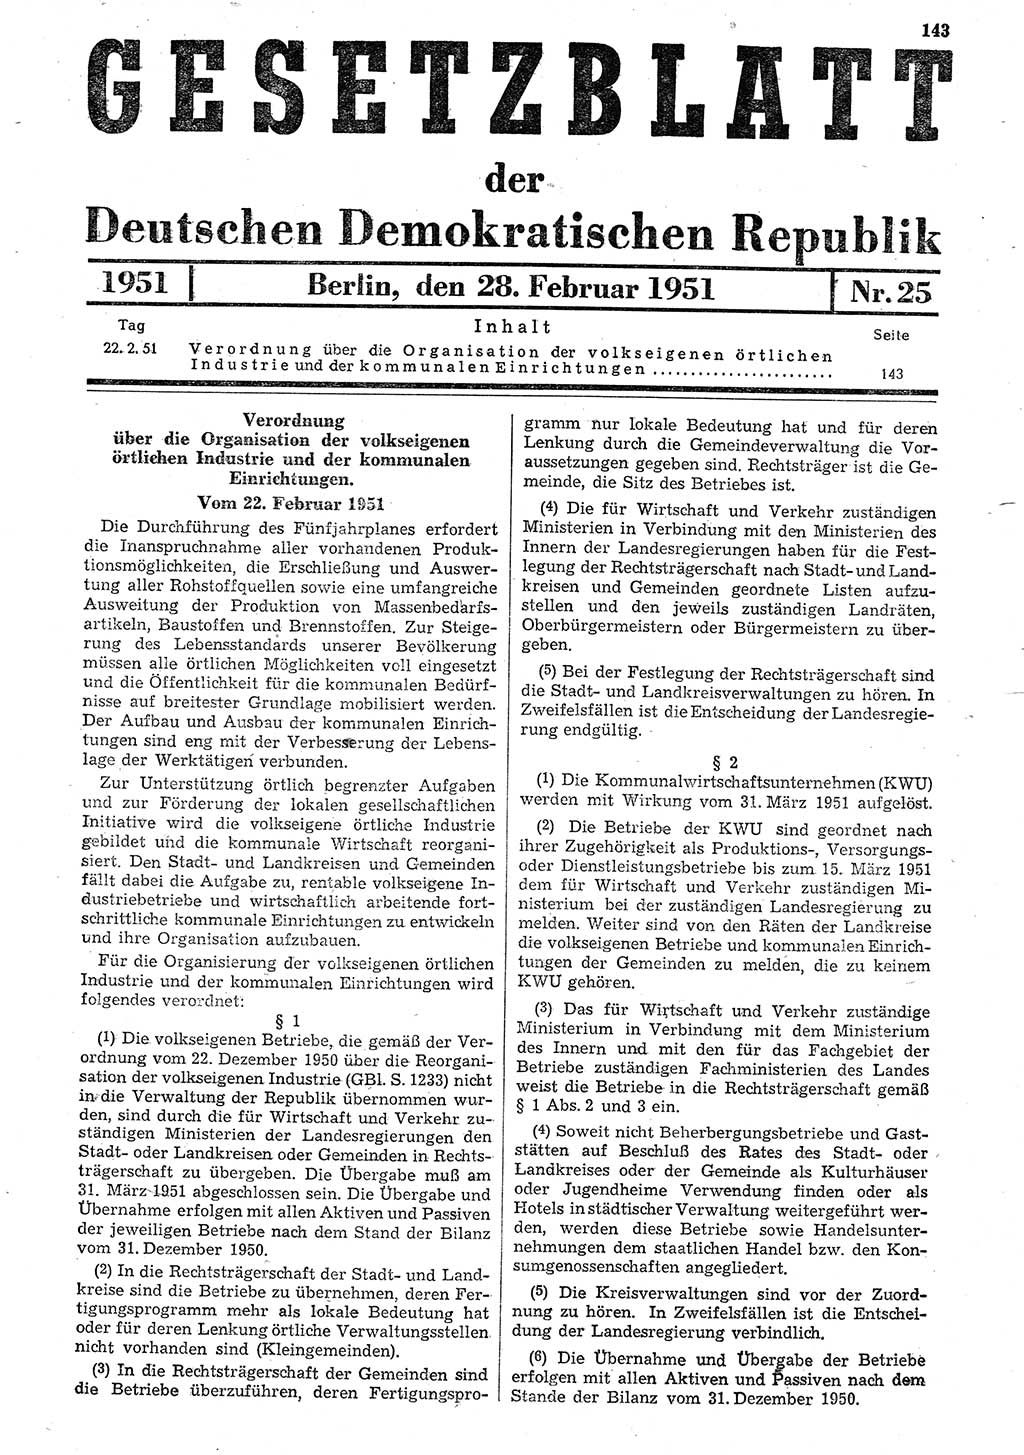 Gesetzblatt (GBl.) der Deutschen Demokratischen Republik (DDR) 1951, Seite 143 (GBl. DDR 1951, S. 143)